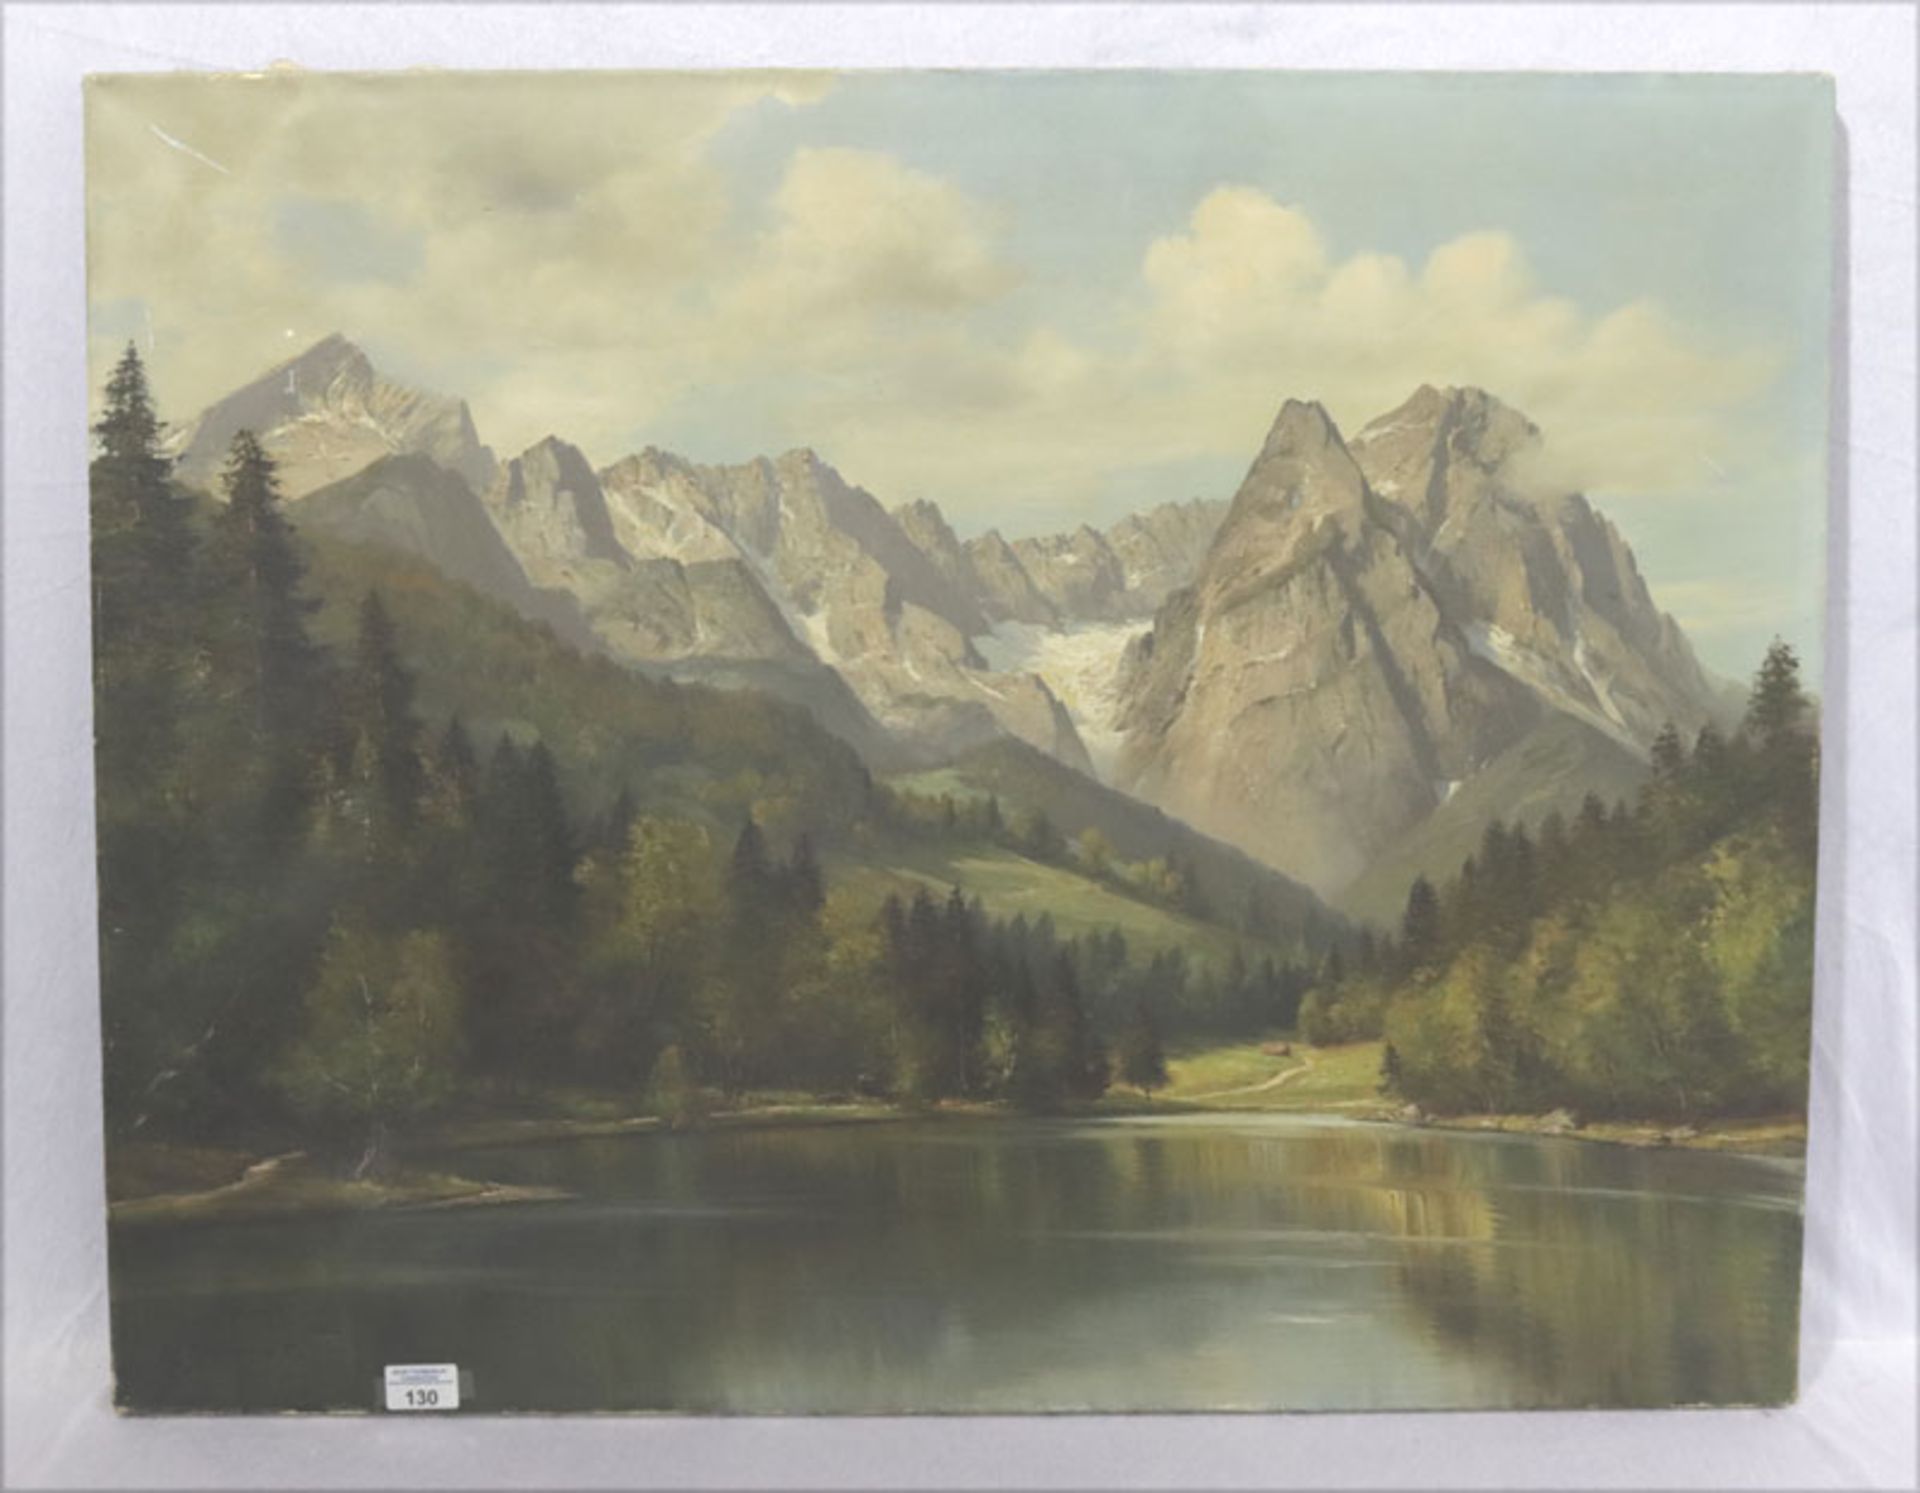 Gemälde ÖL/LW 'Riessersee mit Wettersteingebirge', signiert M. (Max) Sammet, akademischer Maler, *